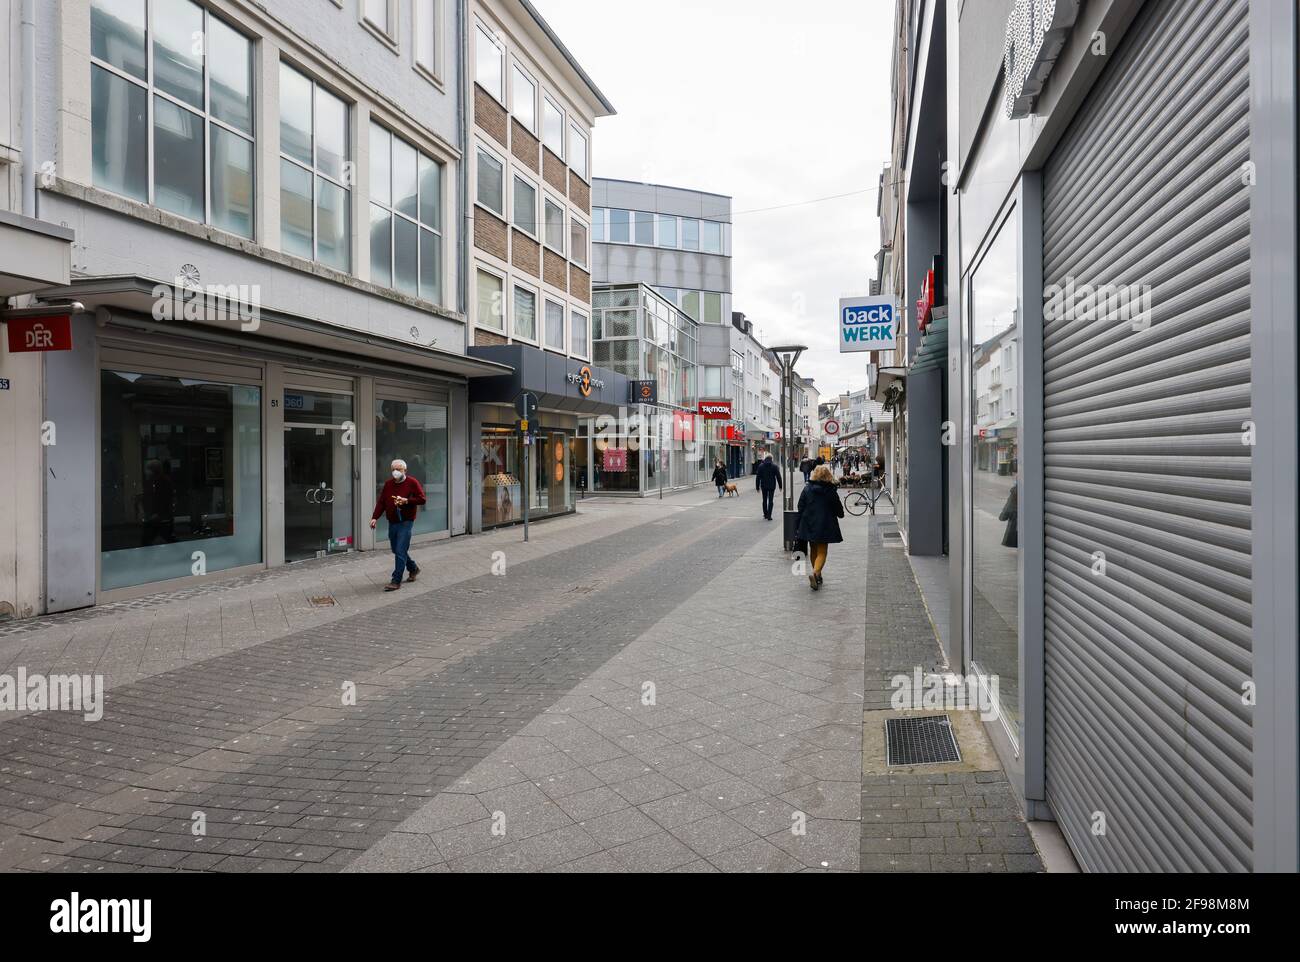 Krefeld, Renania Settentrionale-Vestfalia, Germania - Krefeld centro città in tempi della crisi della corona durante la seconda chiusura, la maggior parte dei negozi sono chiusi, alcuni negozi sono vuoti, solo pochi passanti sono a piedi sulla Hochstrasse, la strada principale dello shopping. Foto Stock